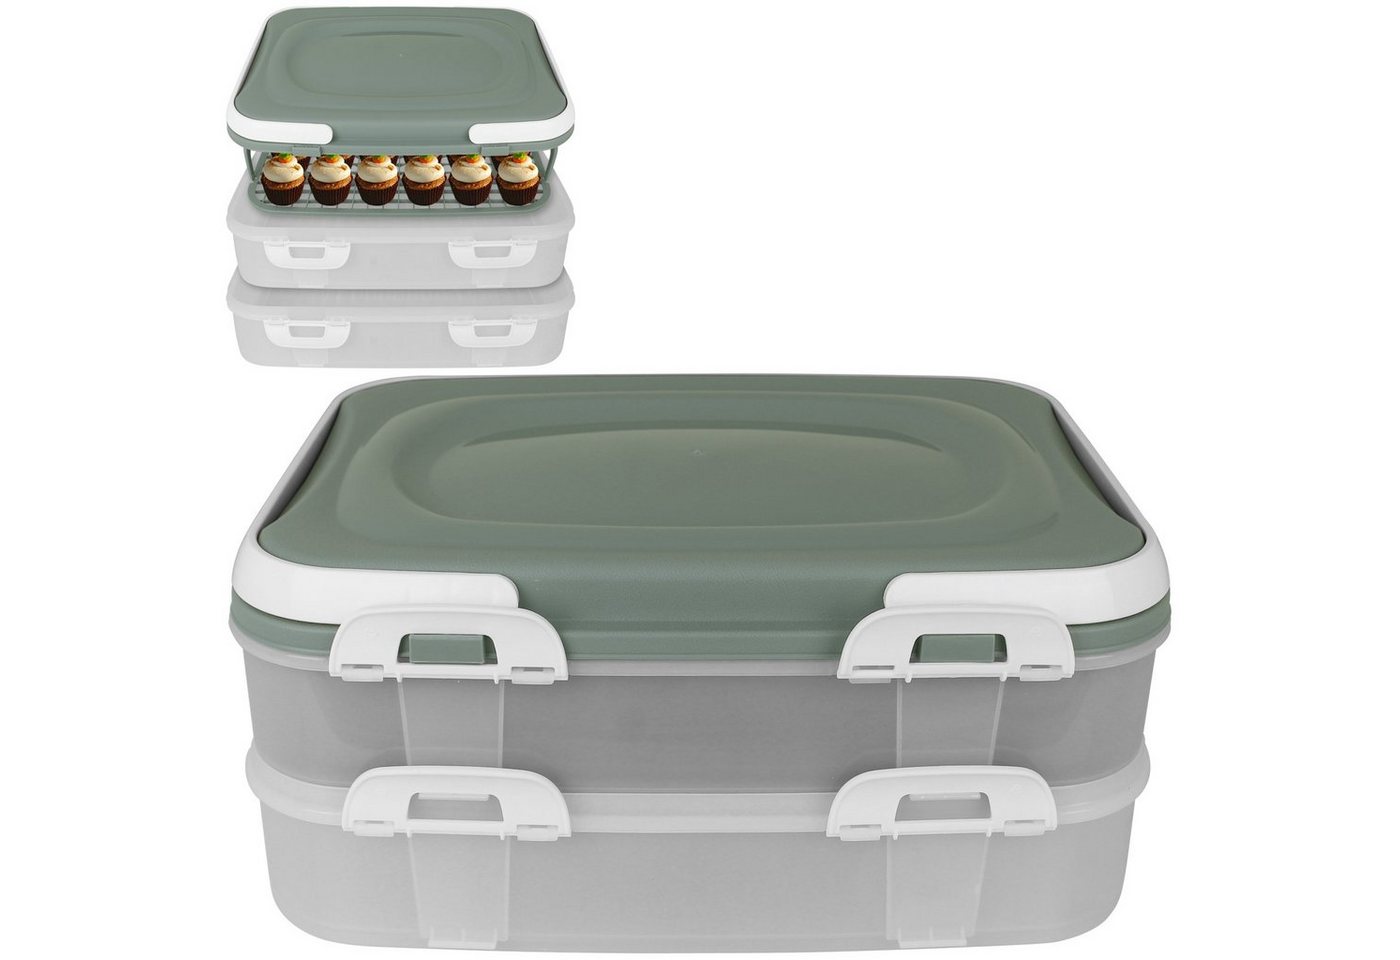 Centi Kuchentransportbox Kuchencontainer 2 Etagen Farbwahl Tortenbehälter Kuchenhaube Tortenbox von Centi